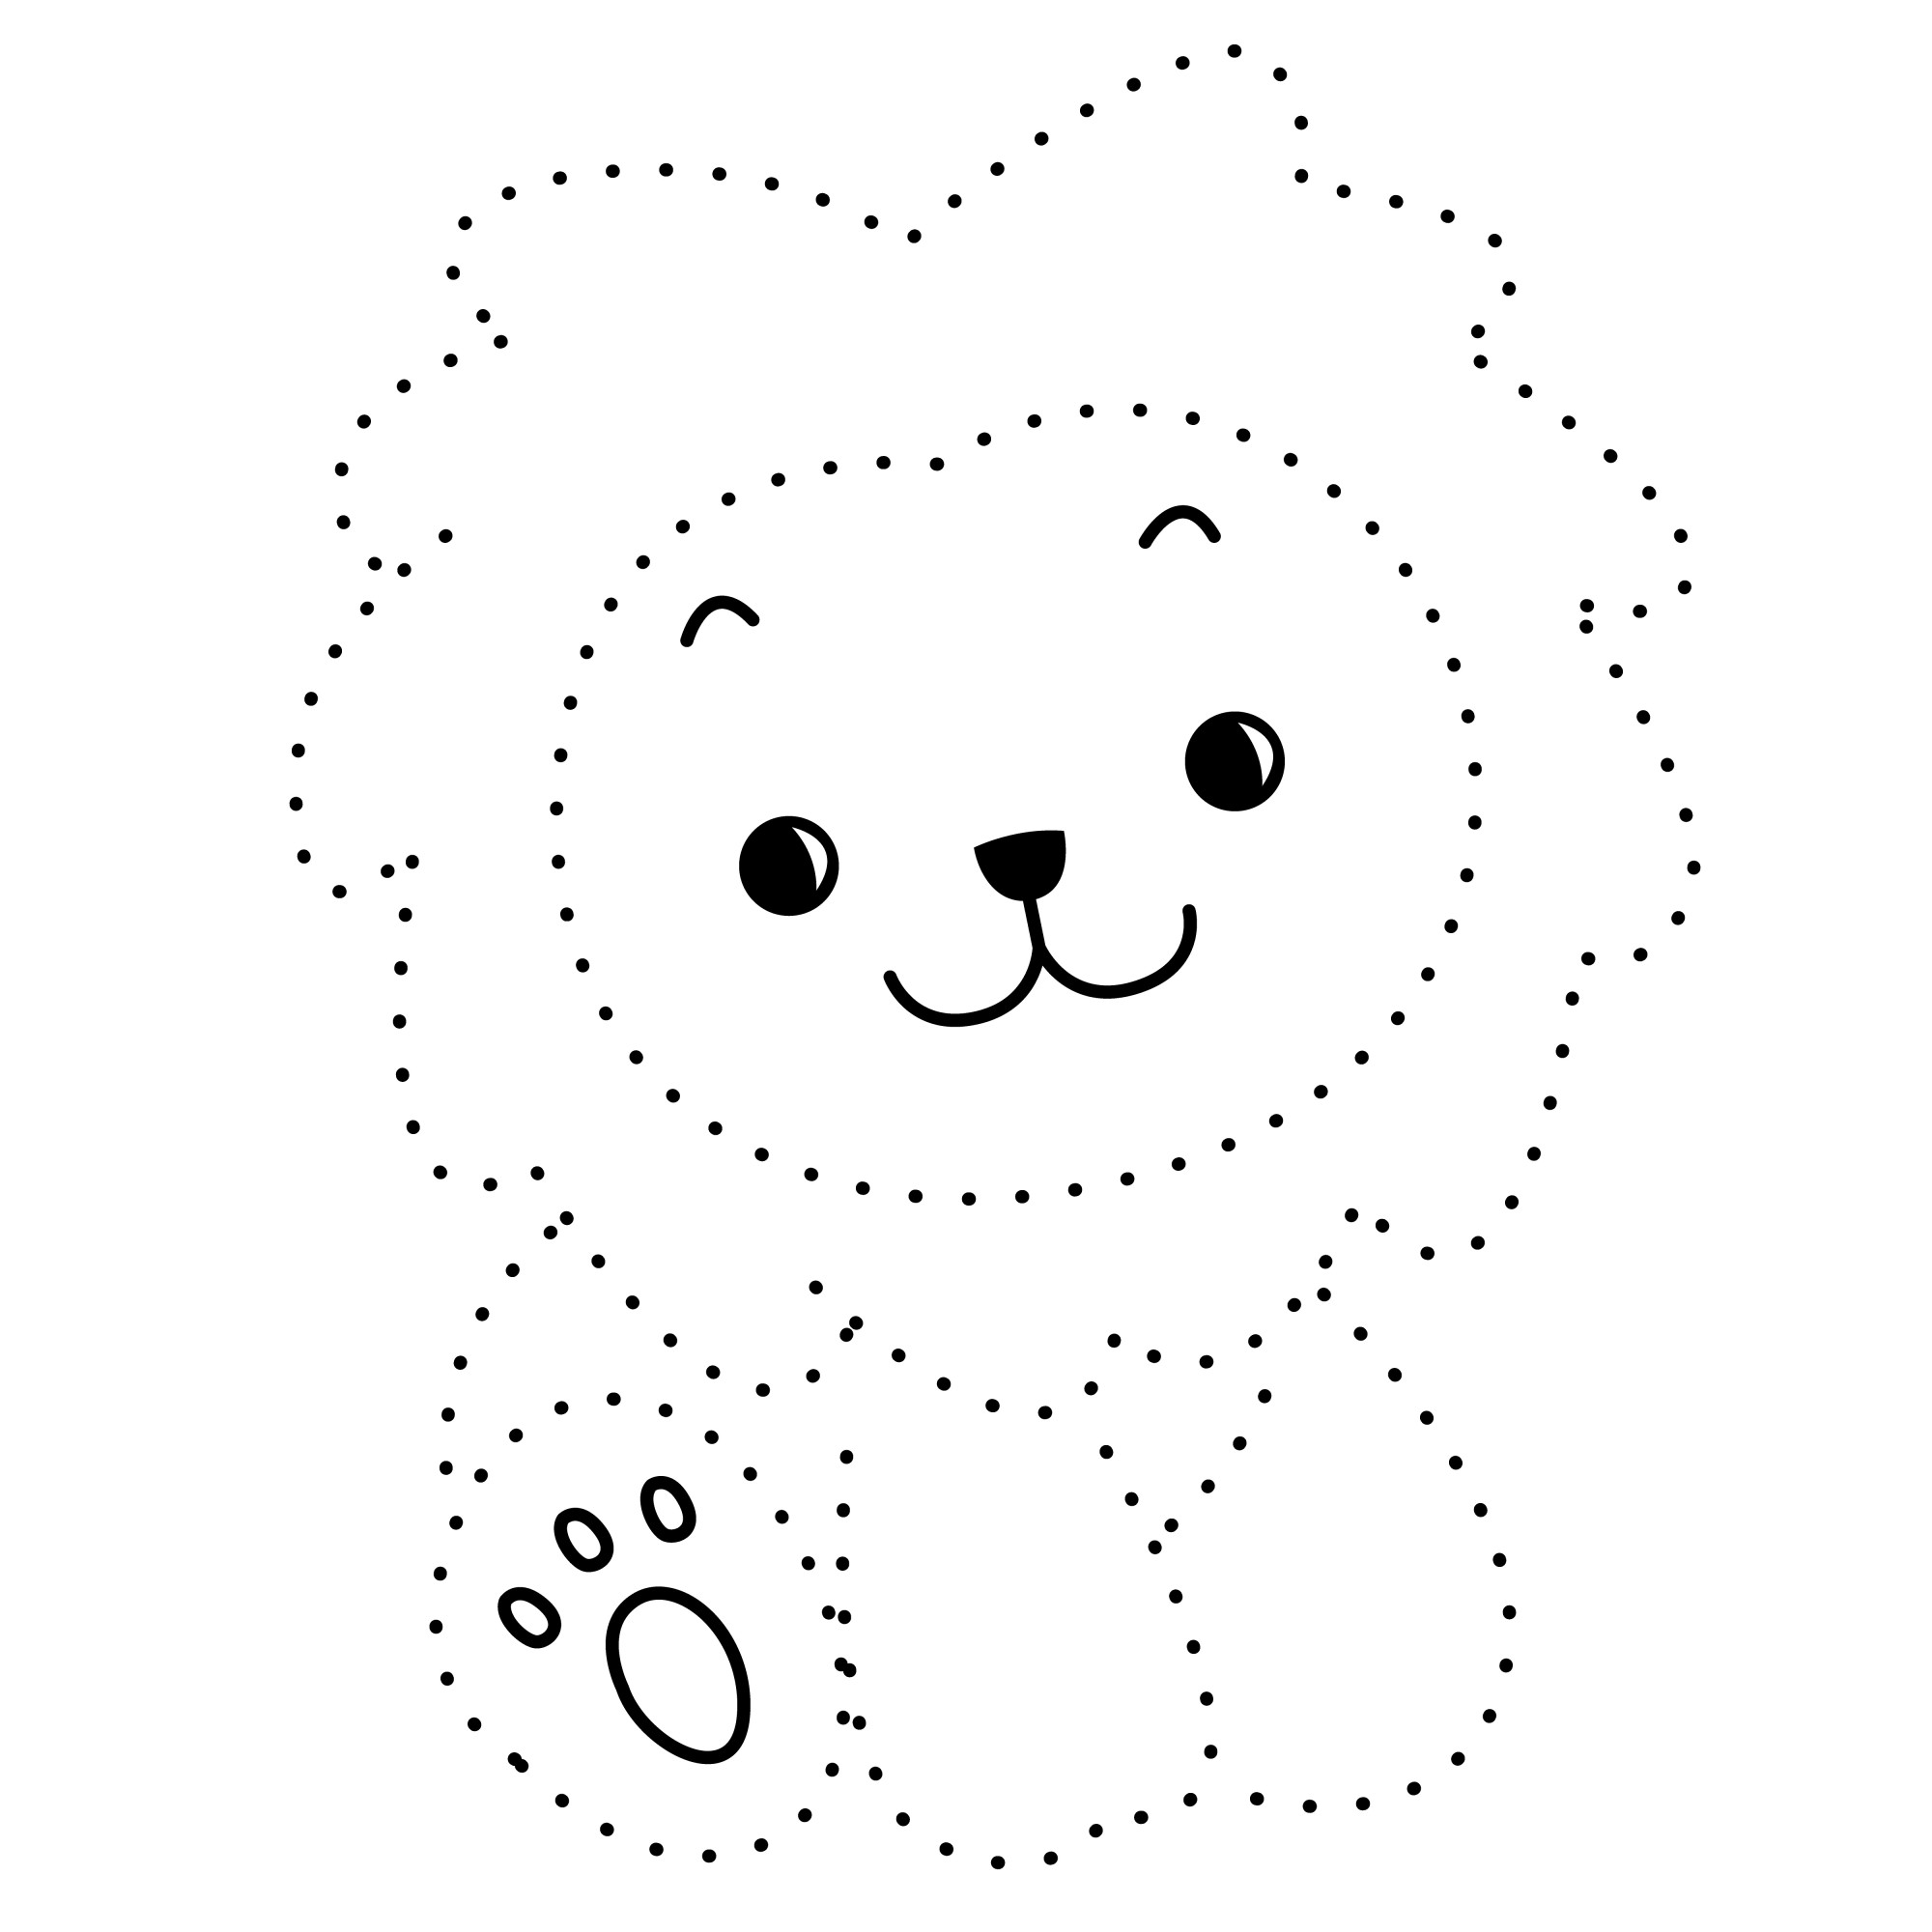 Раскраска для детей: маленький львенок по точкам